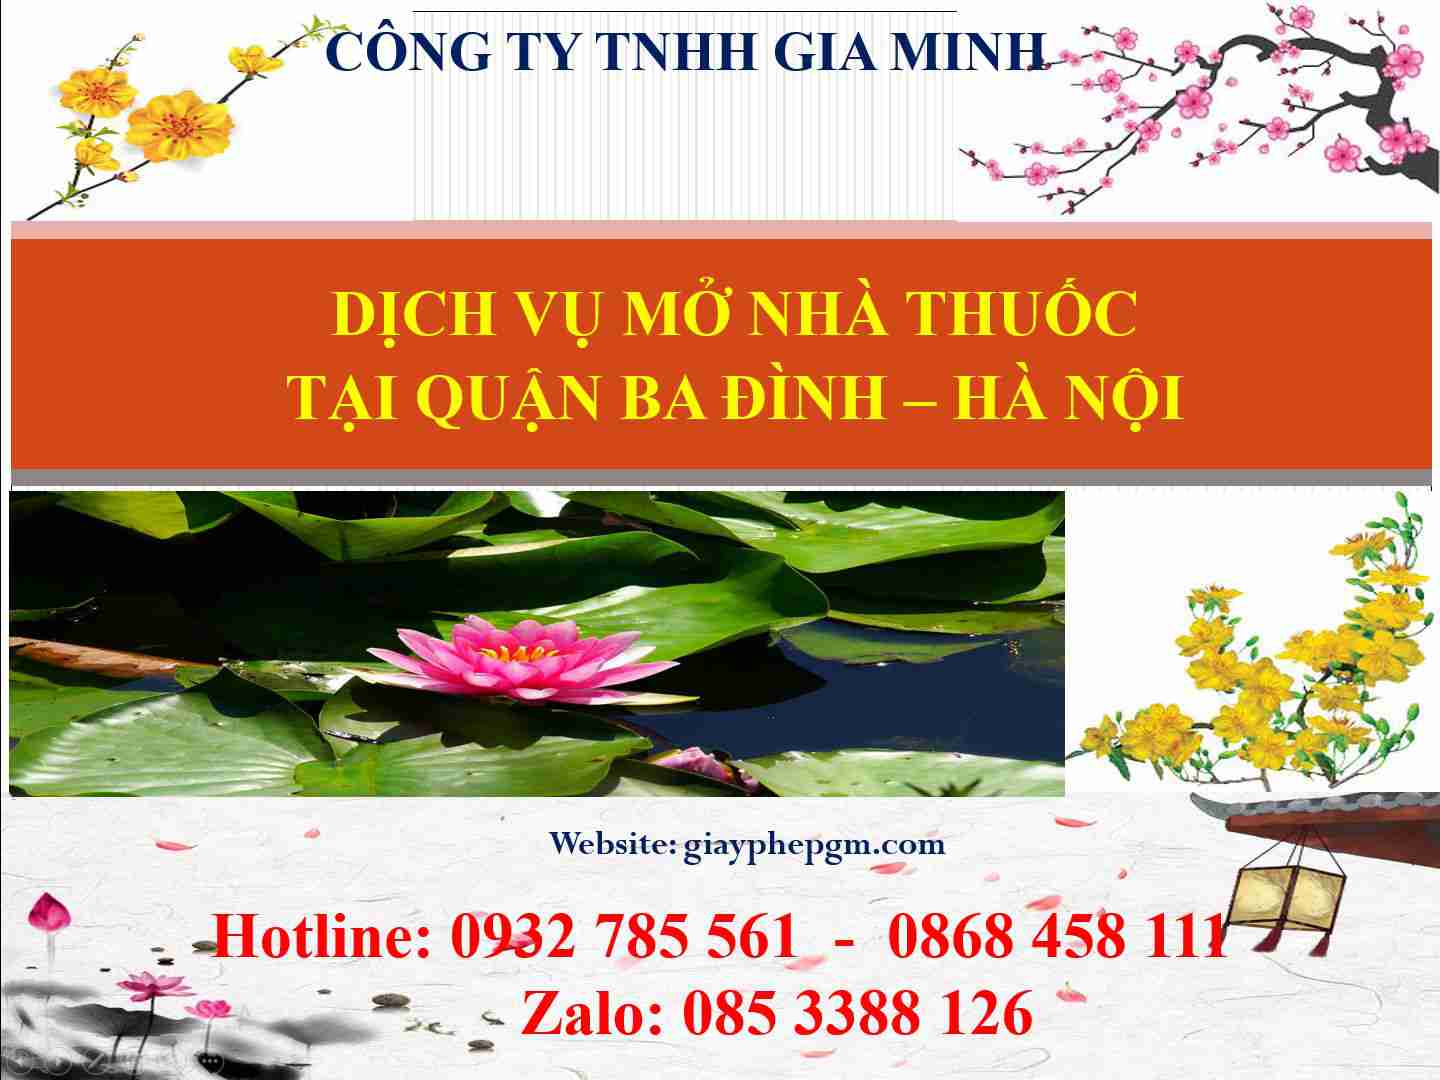 Dịch vụ mở nhà thuốc tại Quận Ba Đình - Hà Nội